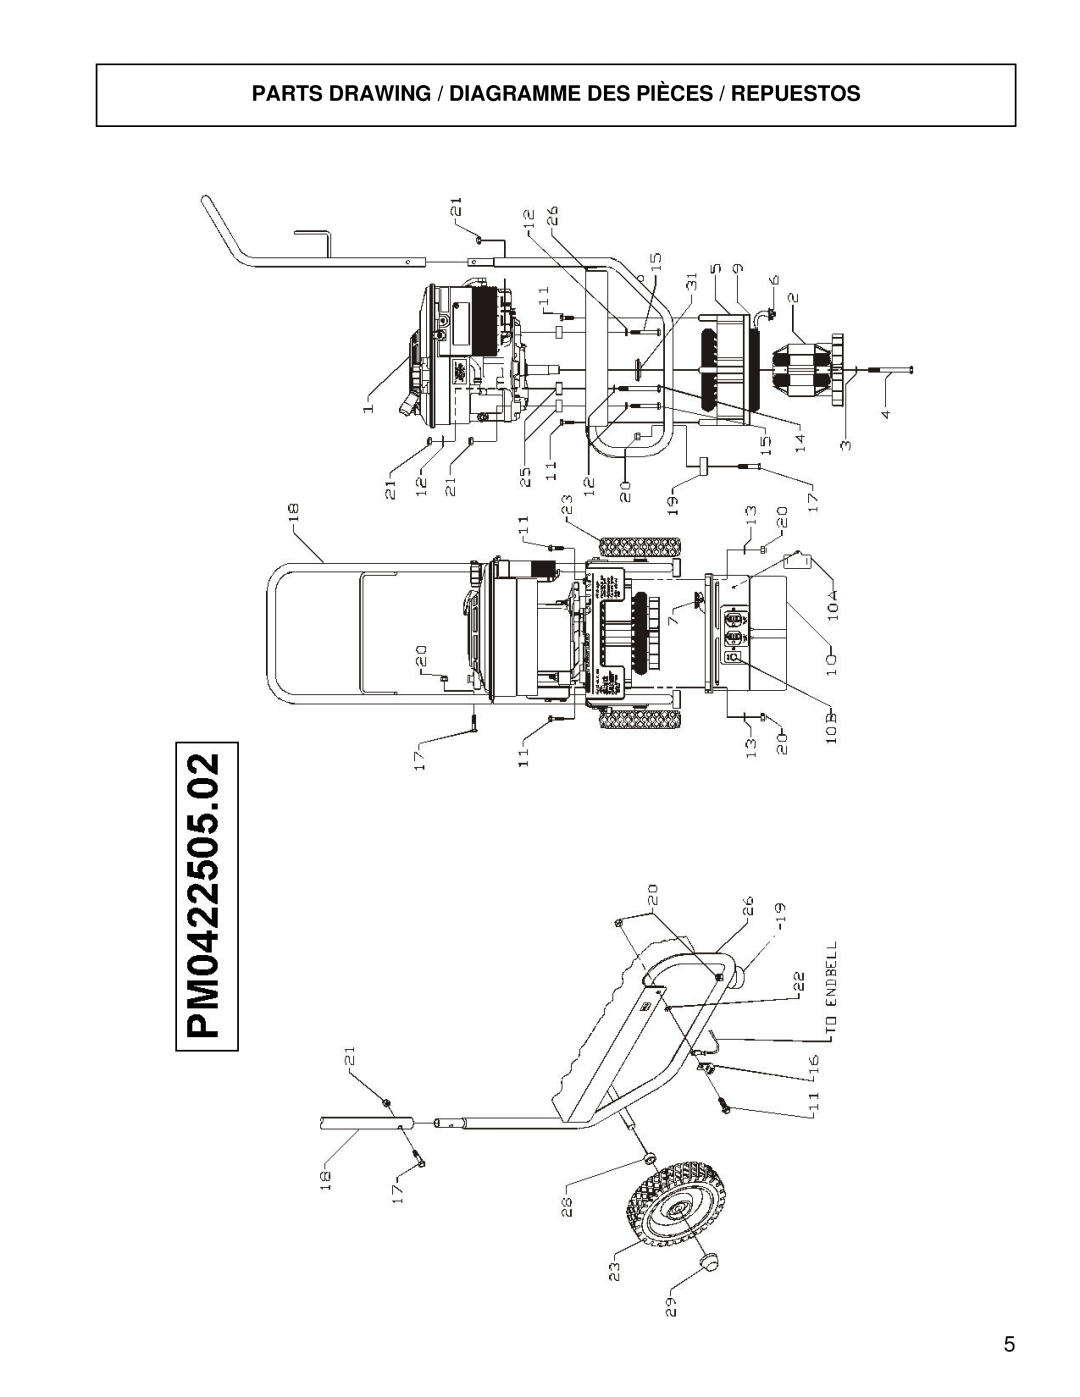 Briggs & Stratton PM0422505.02 manual Parts Drawing / Diagramme Des Pièces / Repuestos 